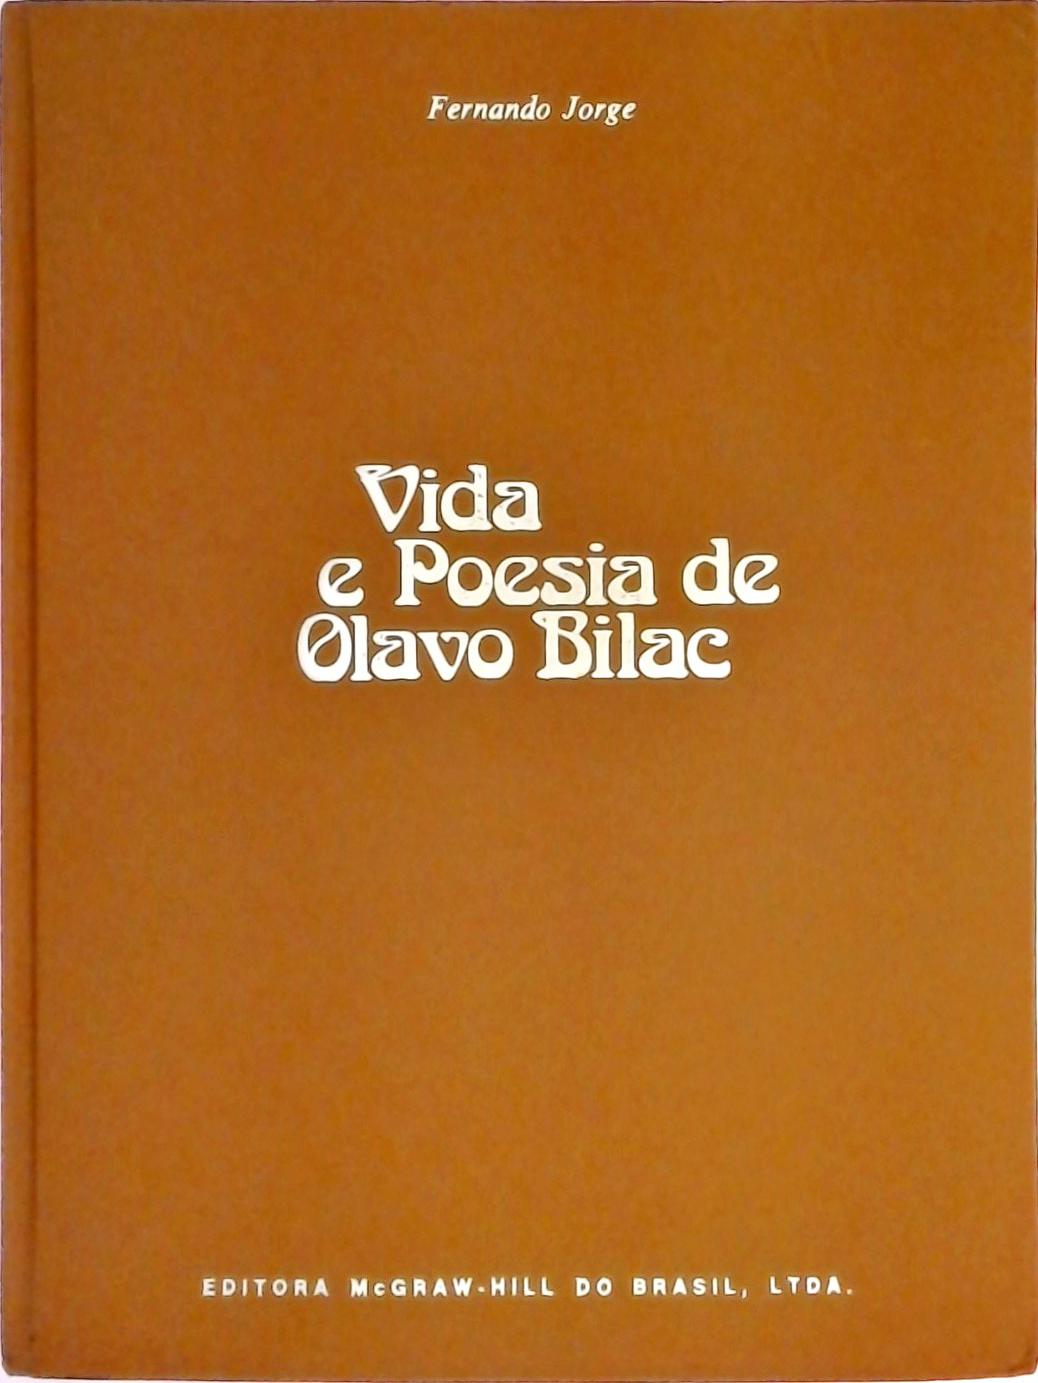 Vida e Poesia de Olavo Bilac